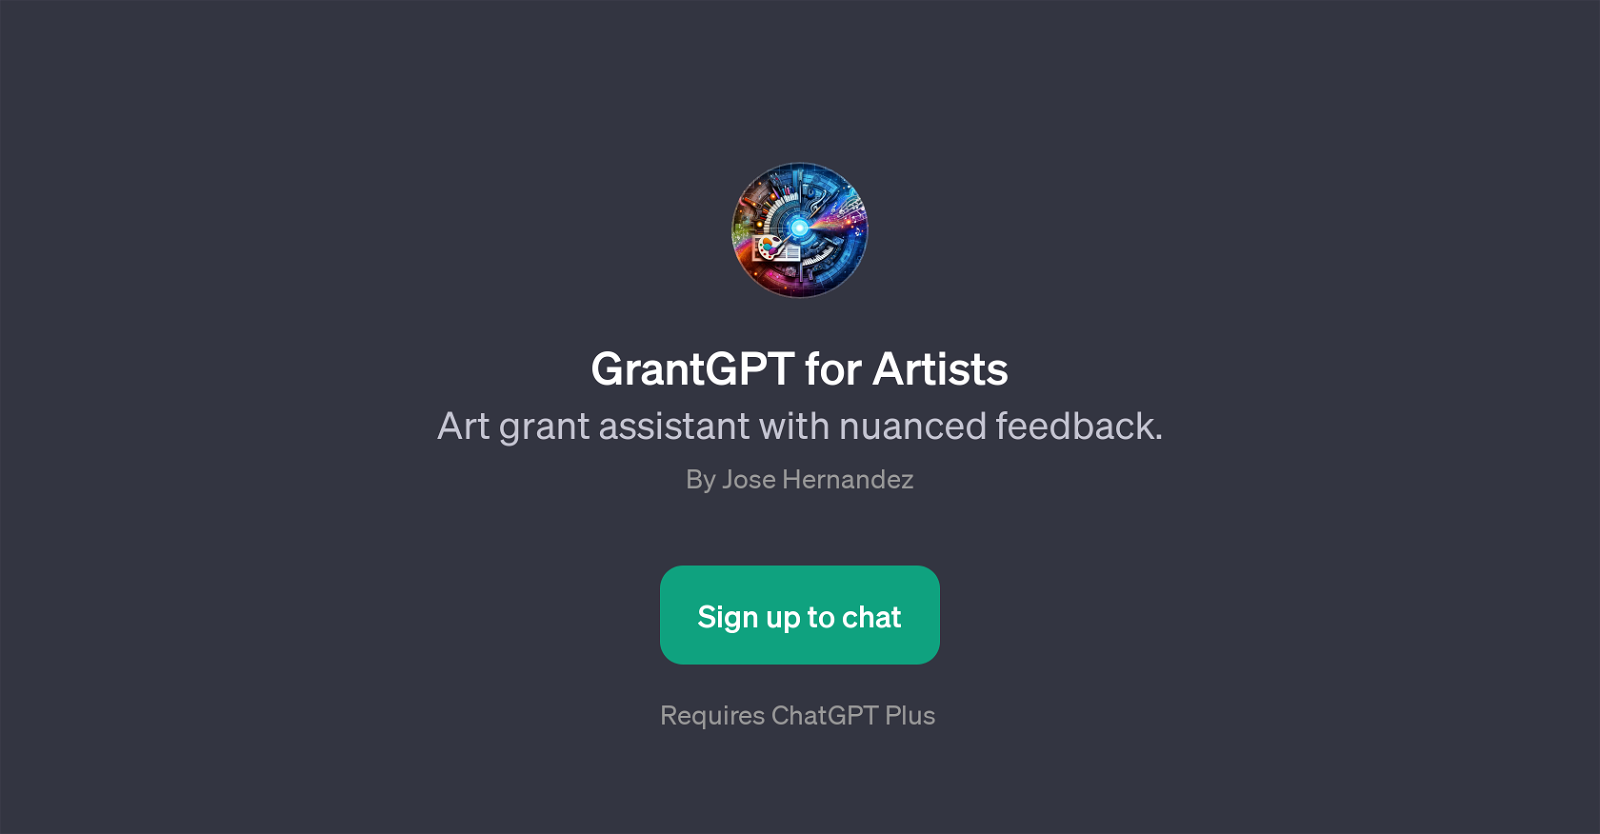 GrantGPT for Artists website